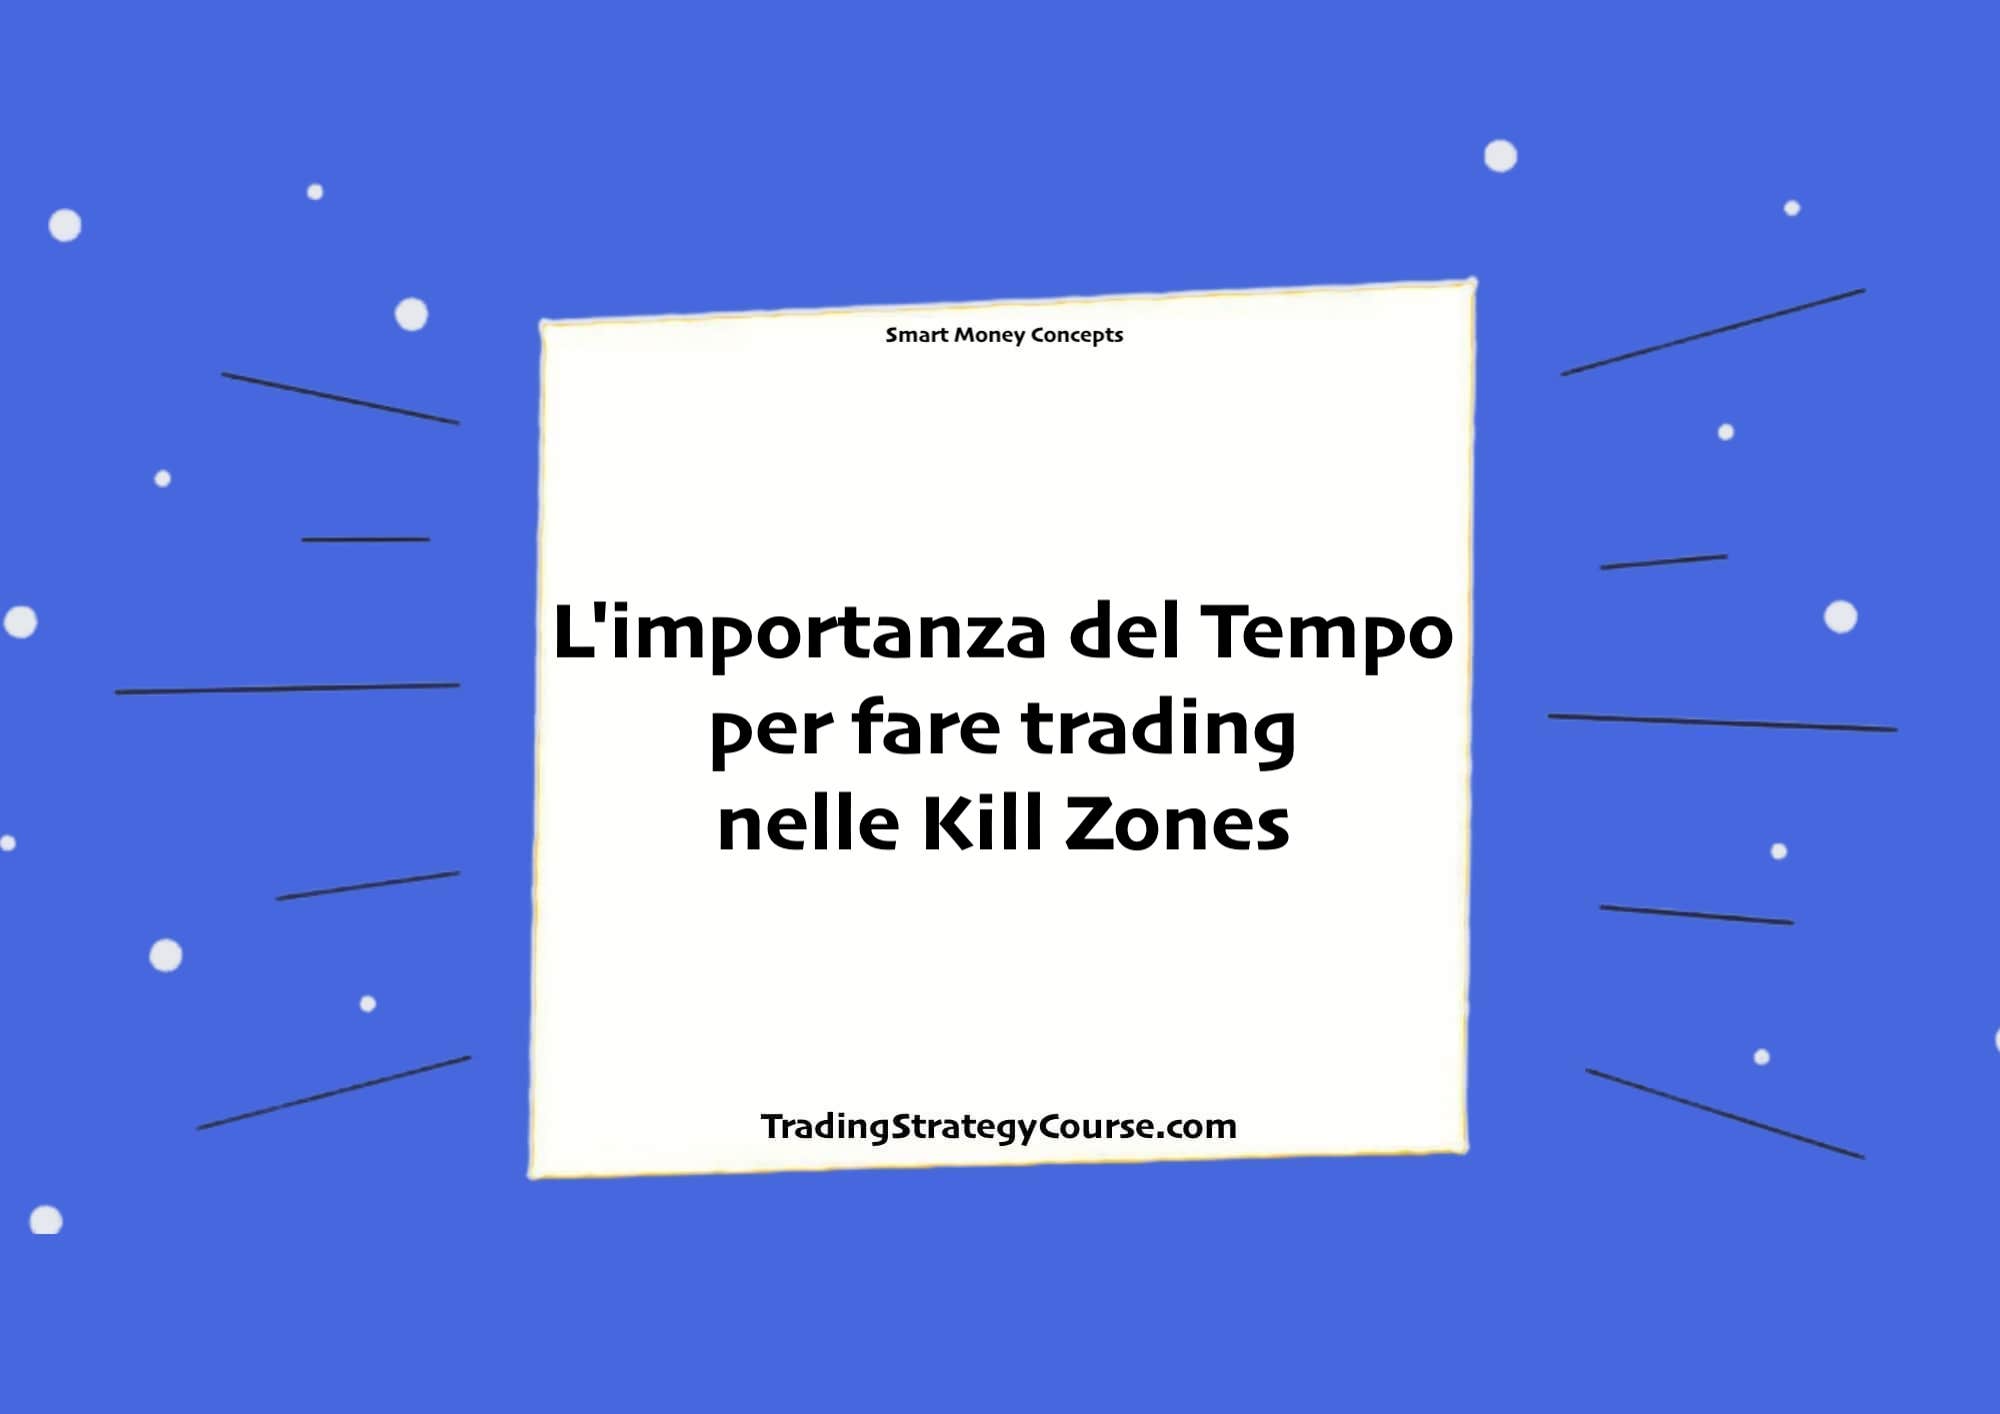 L'importanza del Tempo per fare trading nelle Kill Zones